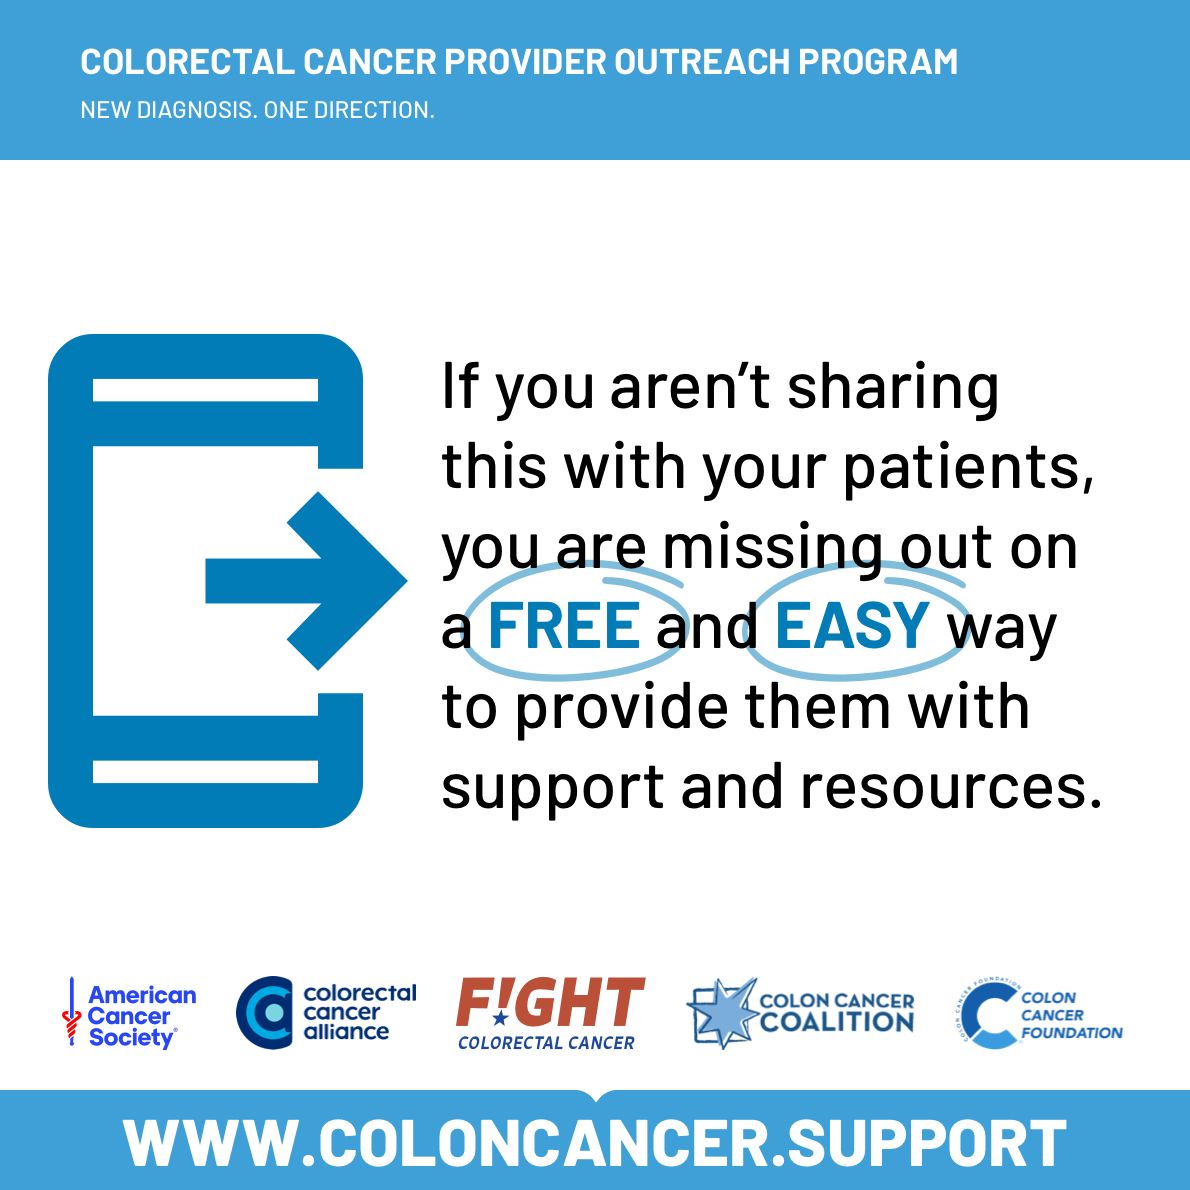 Together we can fight colorectal cancer. Get screened, stay informed.💪 

💙 Visit colorectalcancer.support 💙 

#ColorectalCancer #CRC #ColonCancer #ScreeningsSaveLives #CancerAwareness #BlueForCRC #NeverTooYoung #FightCRC #ColonCancerAwareness #ColorectalCancerAwareness